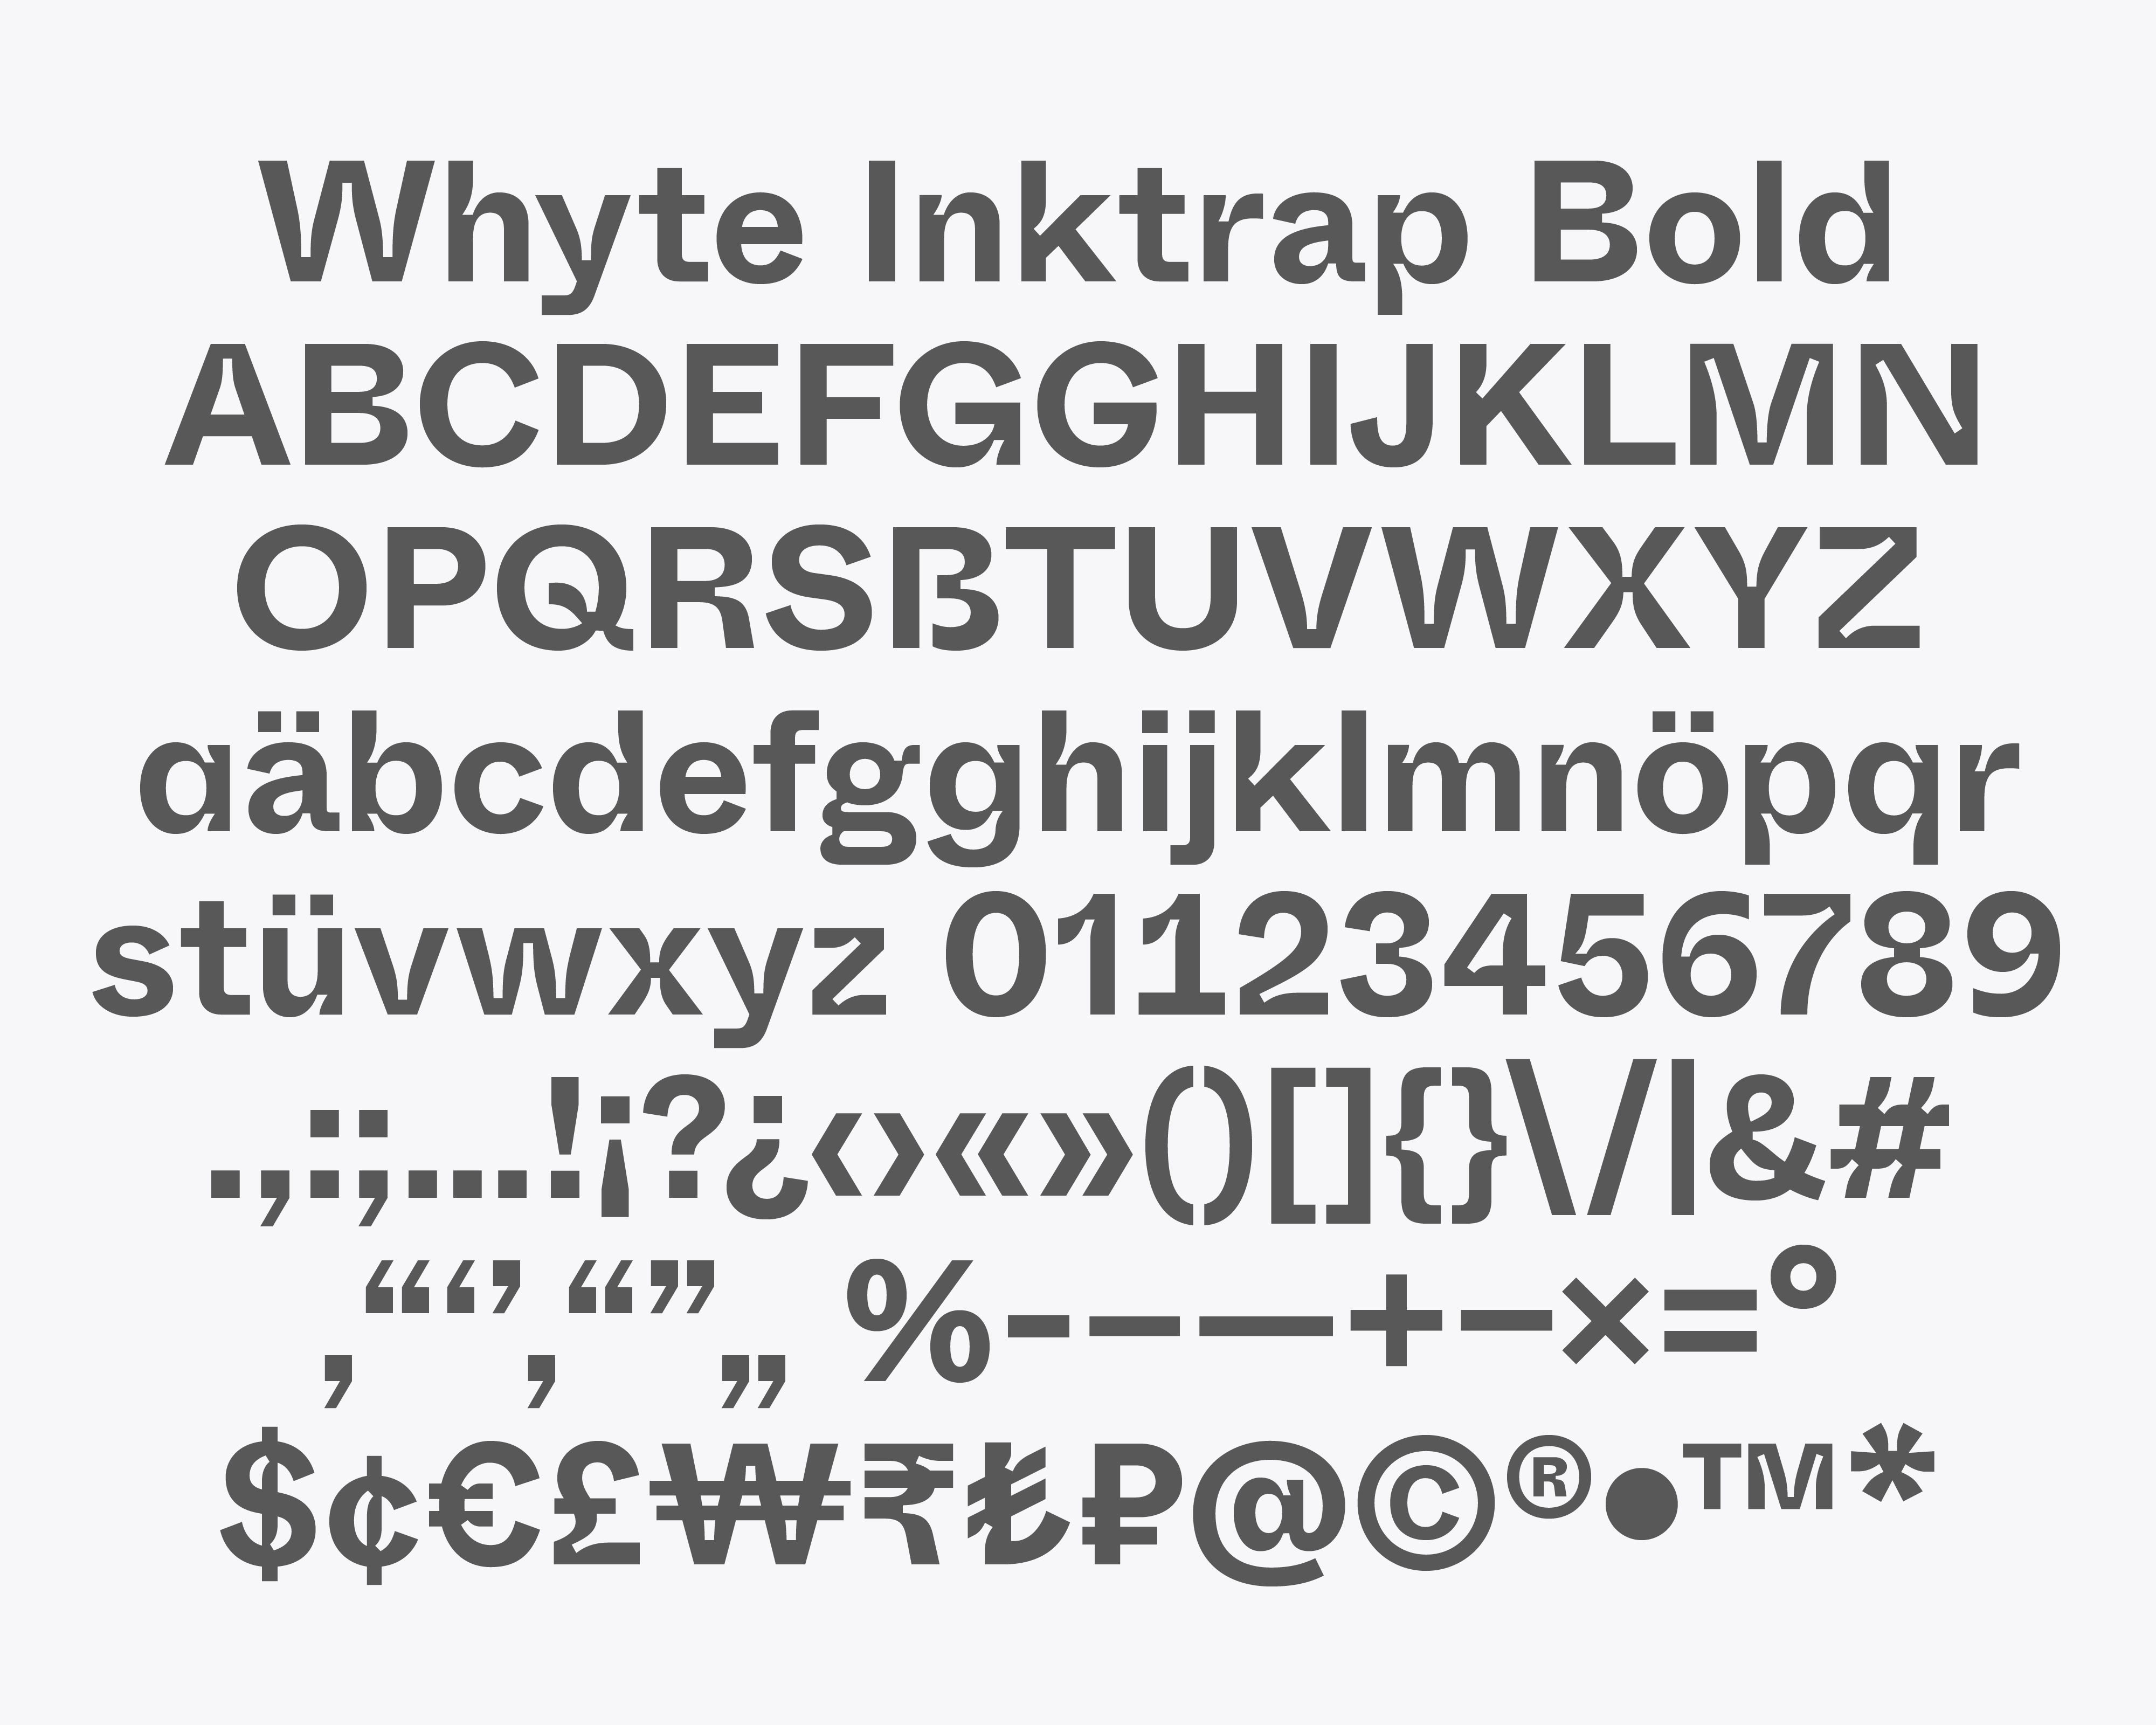 Beispiel einer Whyte Inktrap-Schriftart